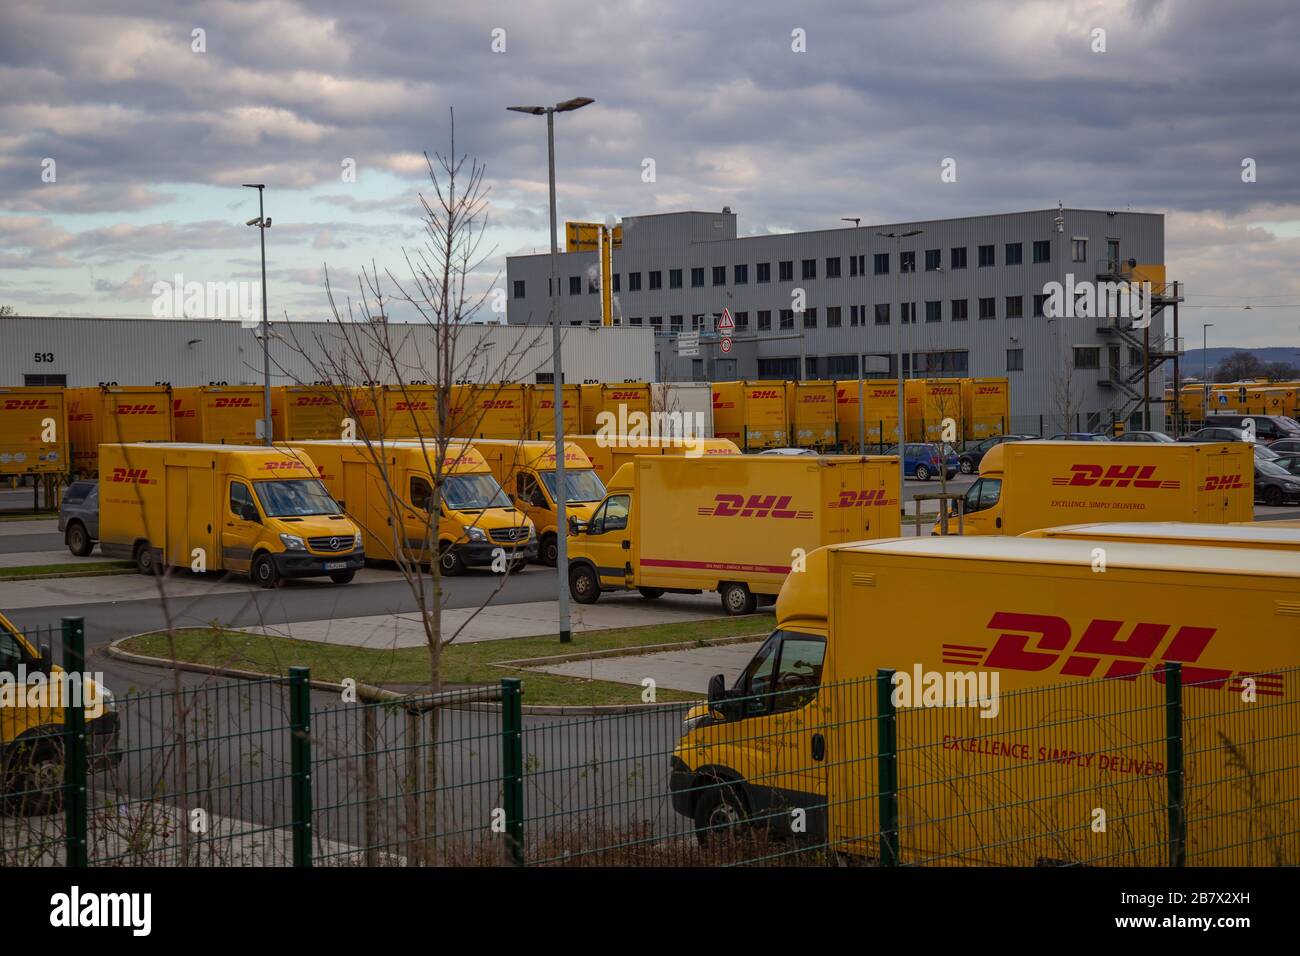 Neuwied, Allemagne - 07 mars 2020: Les fourgonnettes DHL devant un dépôt DHL et un immeuble de bureaux. DHL est un leader mondial de la logistique Banque D'Images